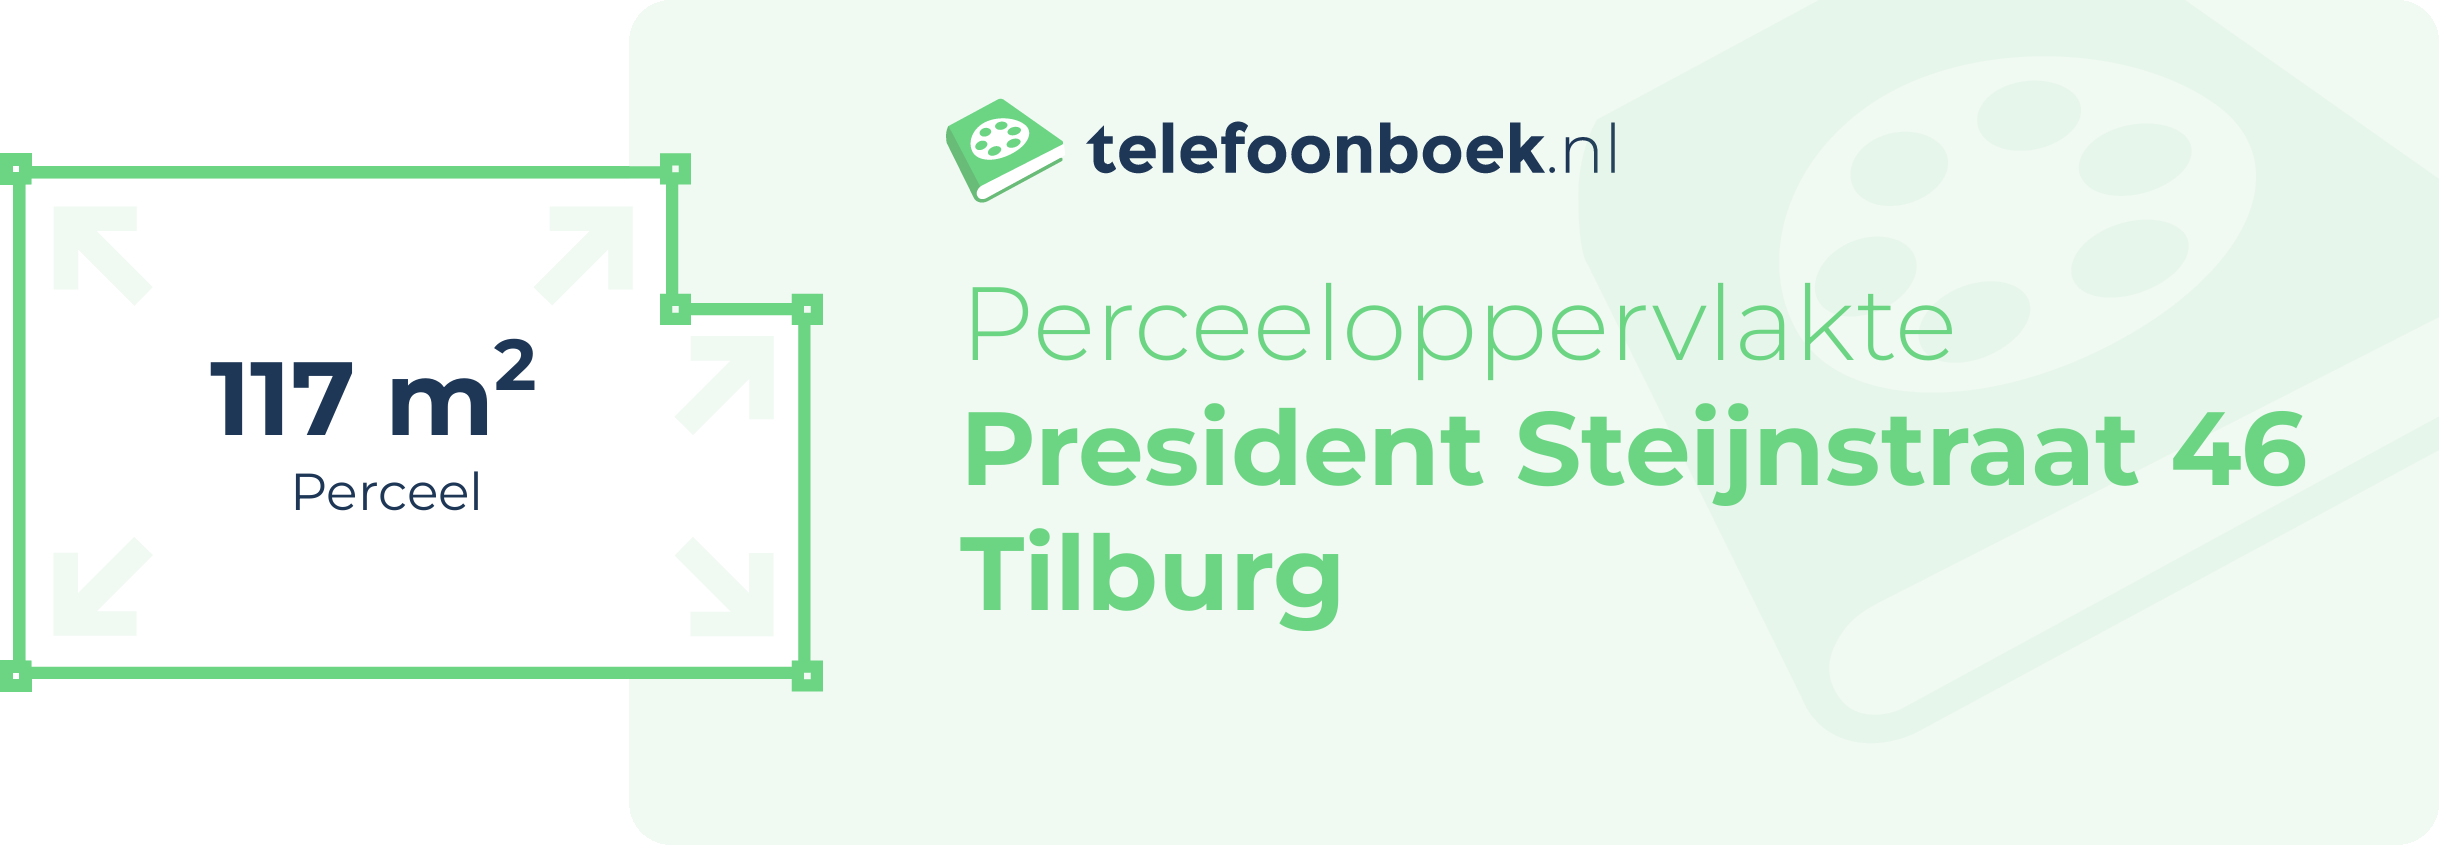 Perceeloppervlakte President Steijnstraat 46 Tilburg